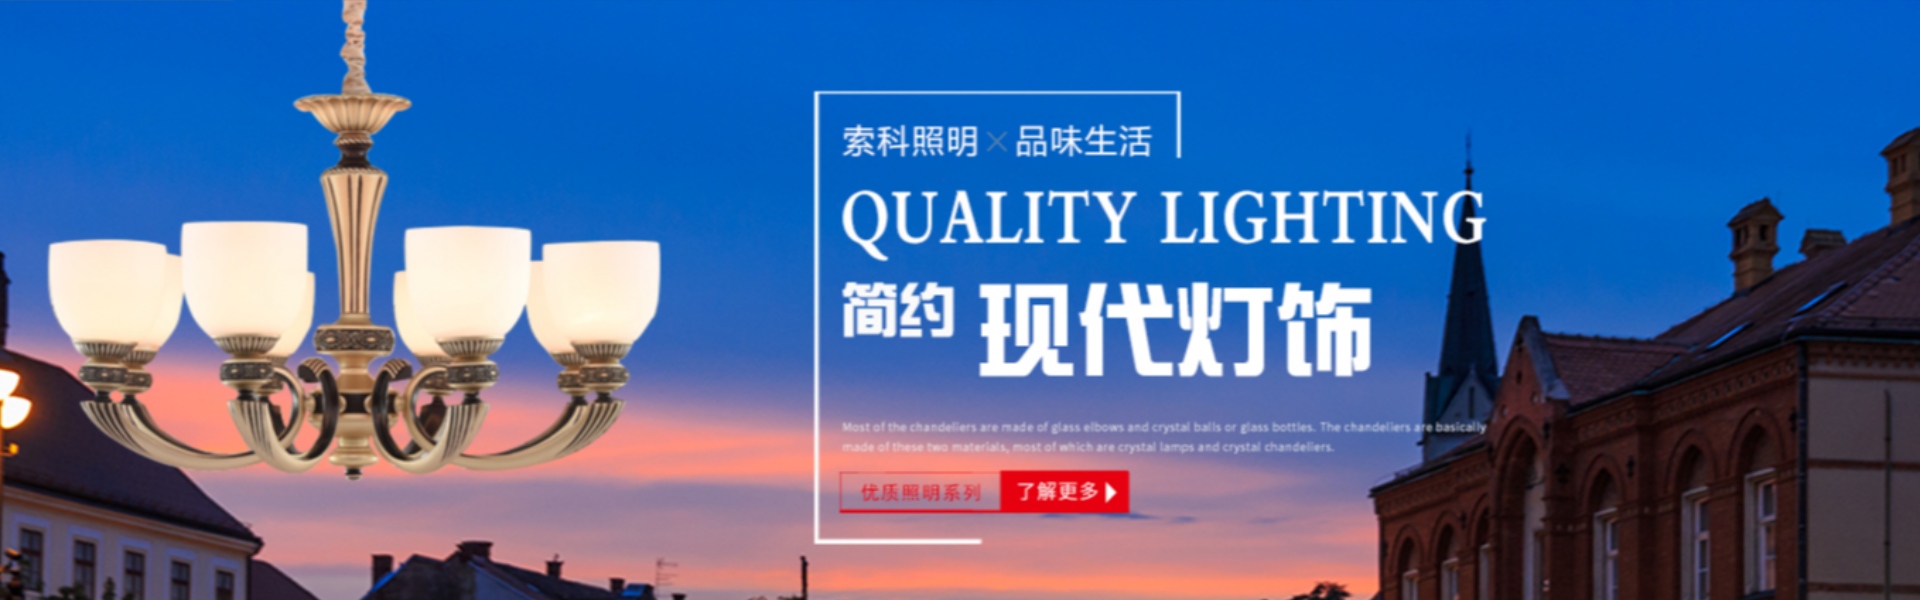 illuminazione domestica, illuminazione esterna, illuminazione solare,Zhongshan Suoke Lighting Electric Co., Ltd.